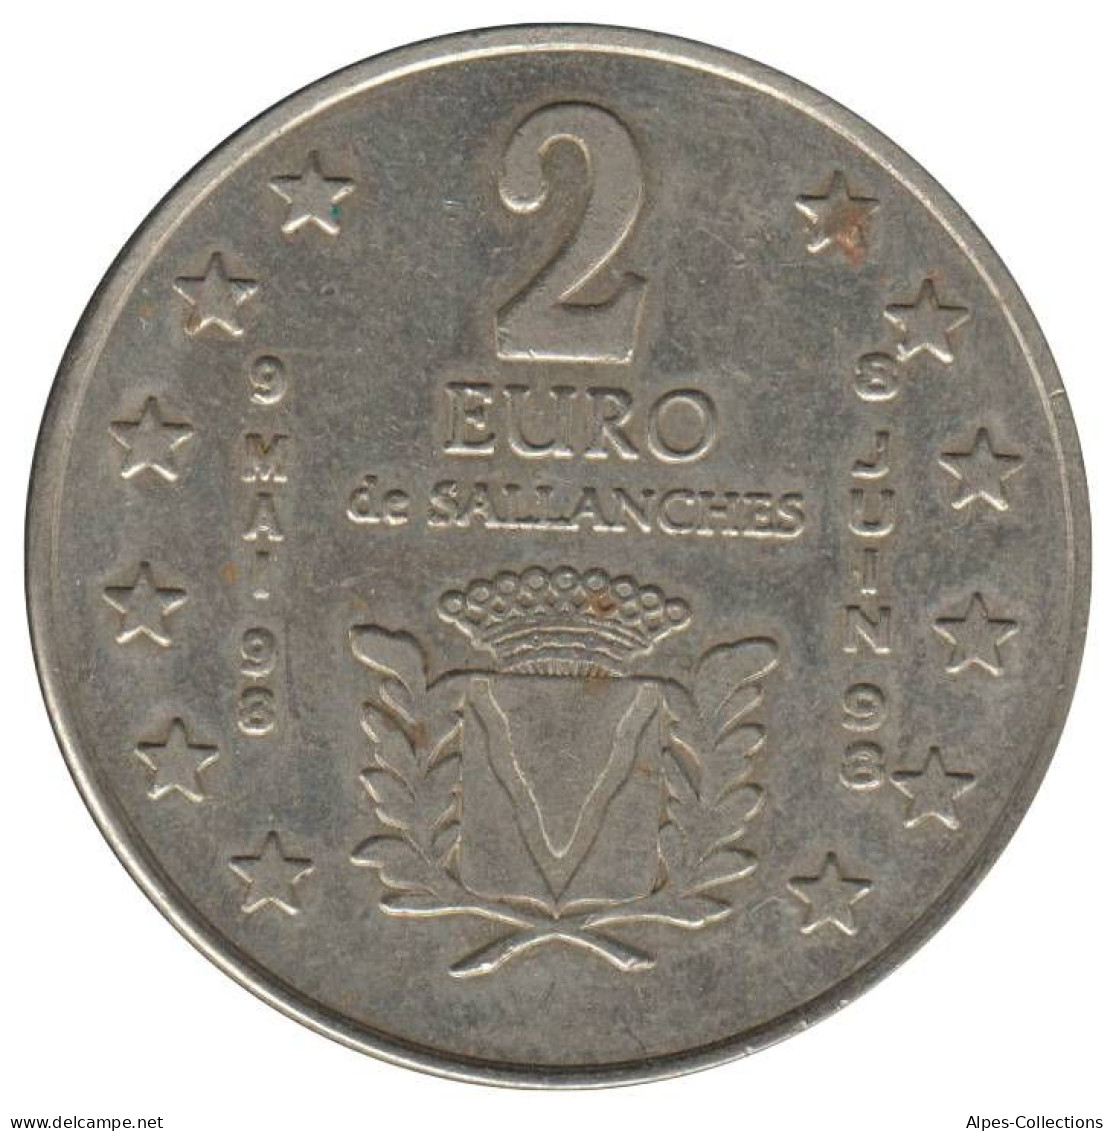 SALLANCHES - EU0020.1 - 2 EURO DES VILLES - Réf: NR - 1998 - Euro Delle Città